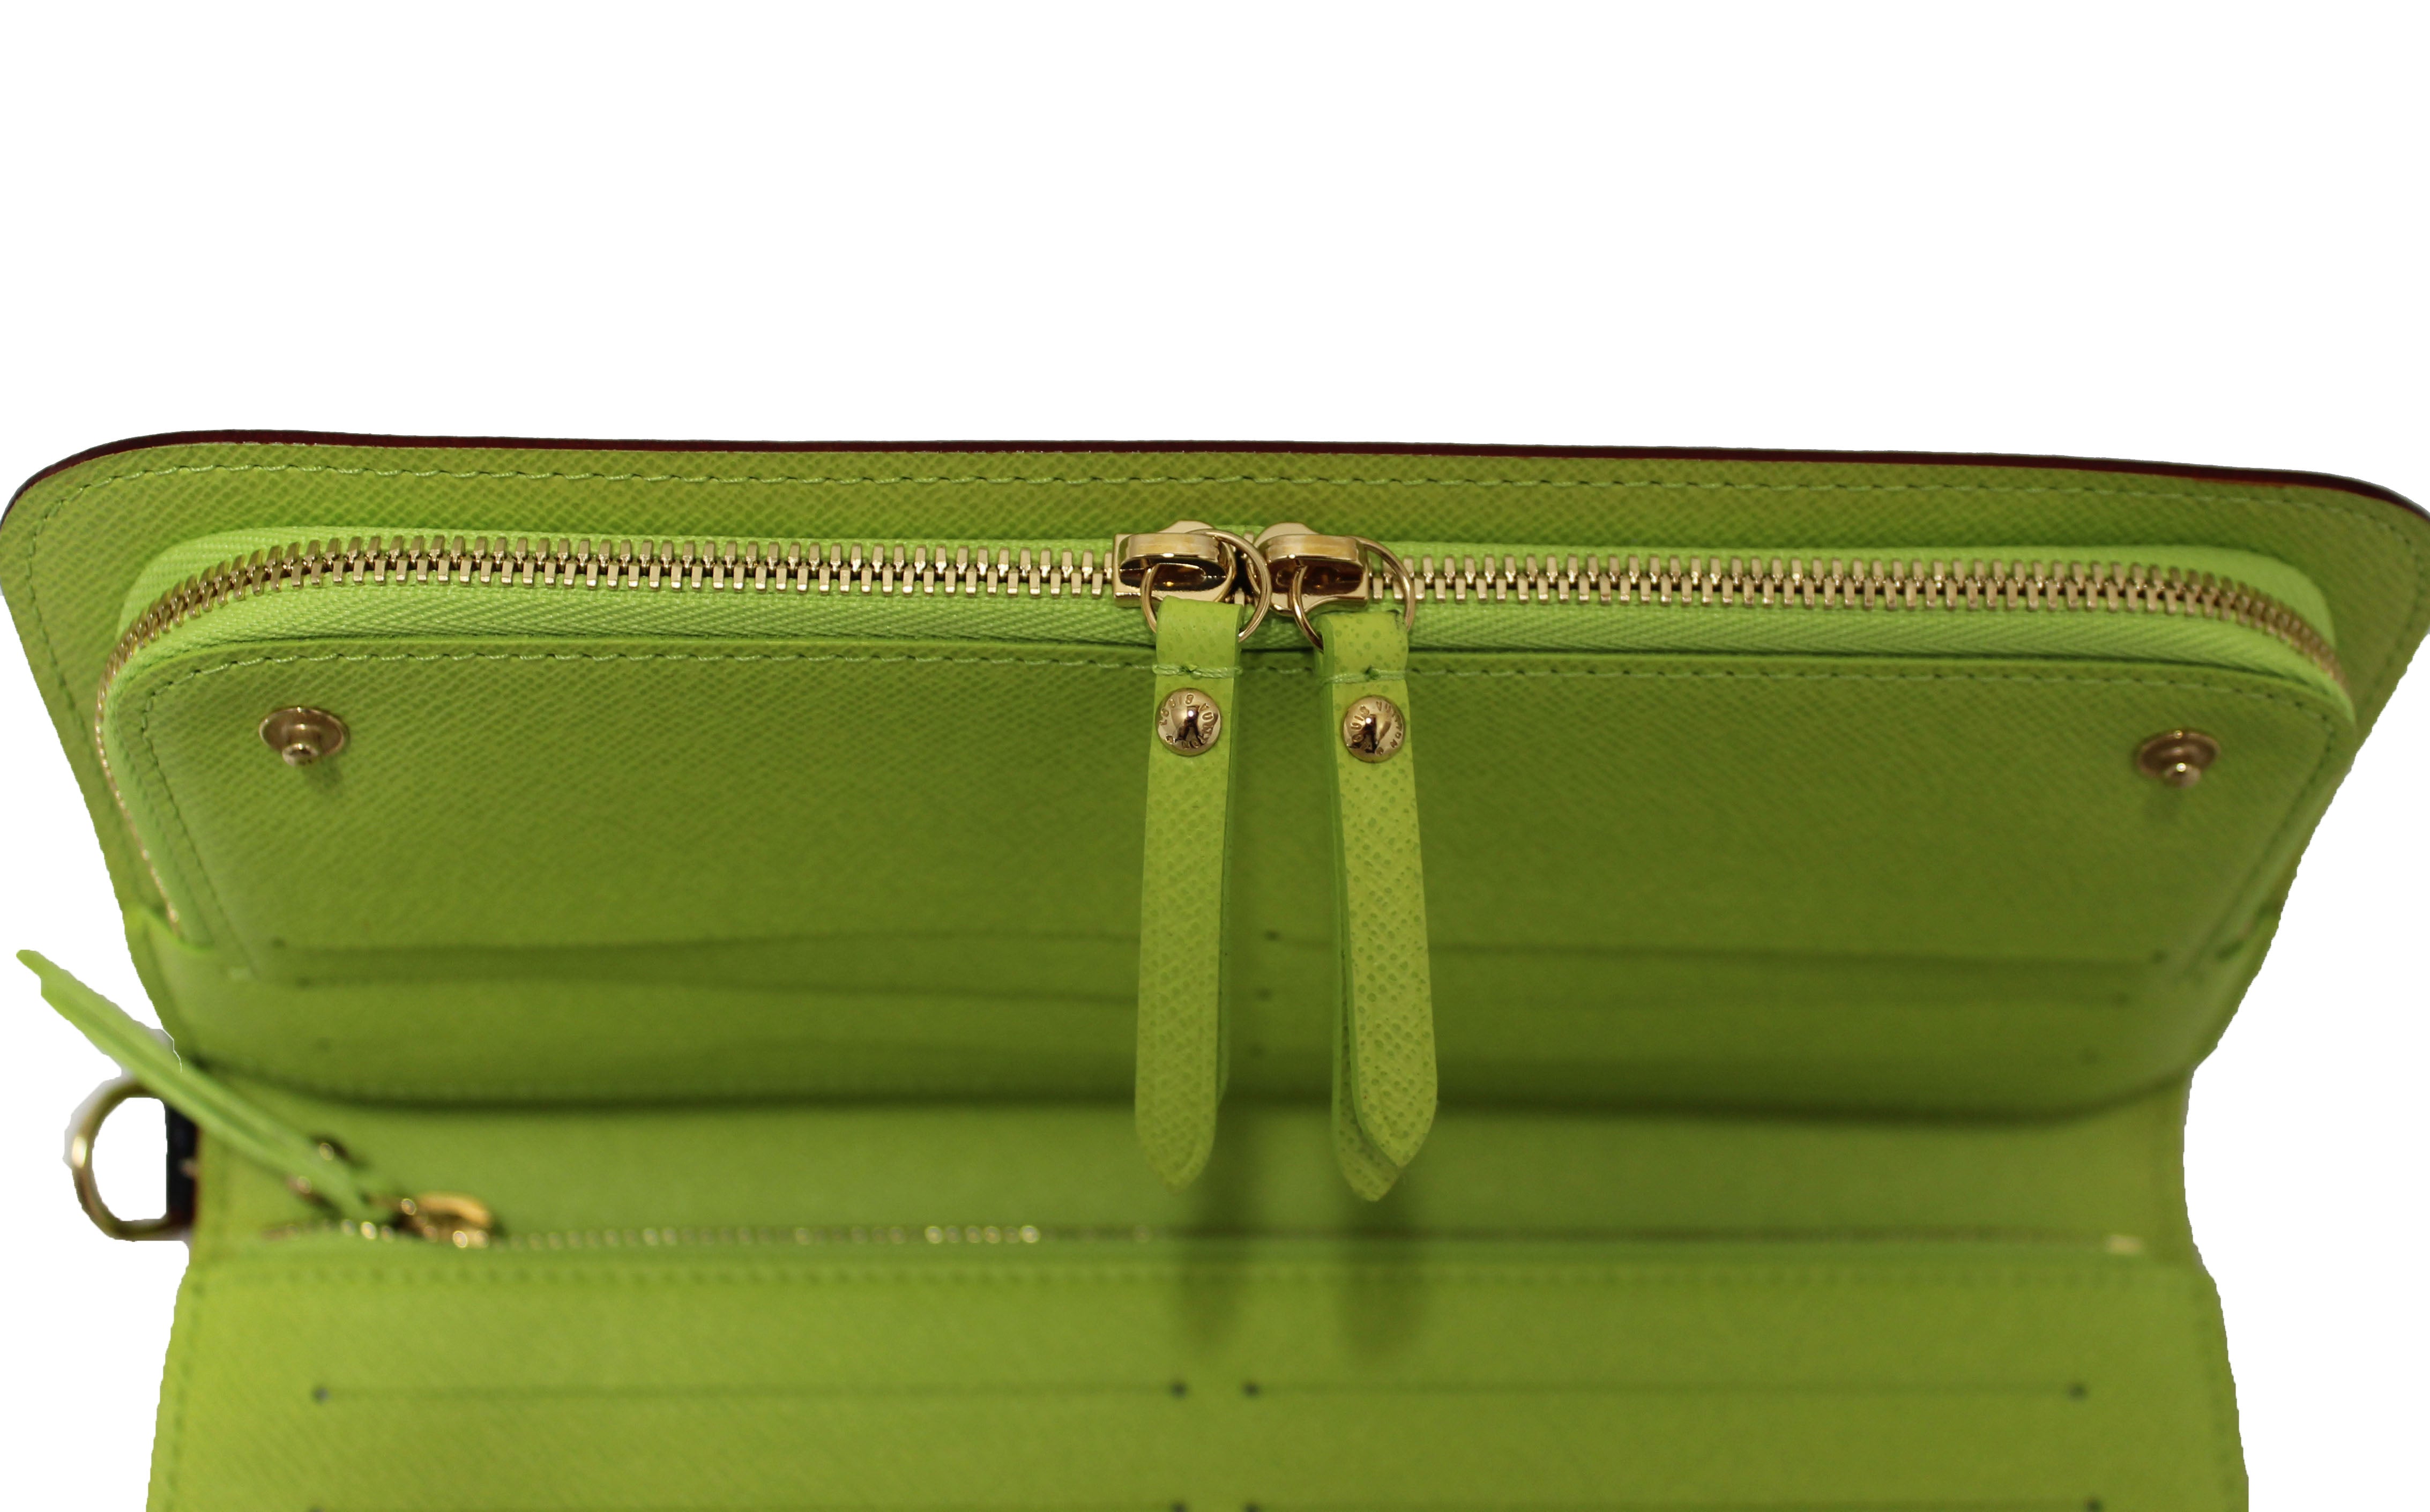 Insolite Wallet Articles De Voyage Monogram – Keeks Designer Handbags